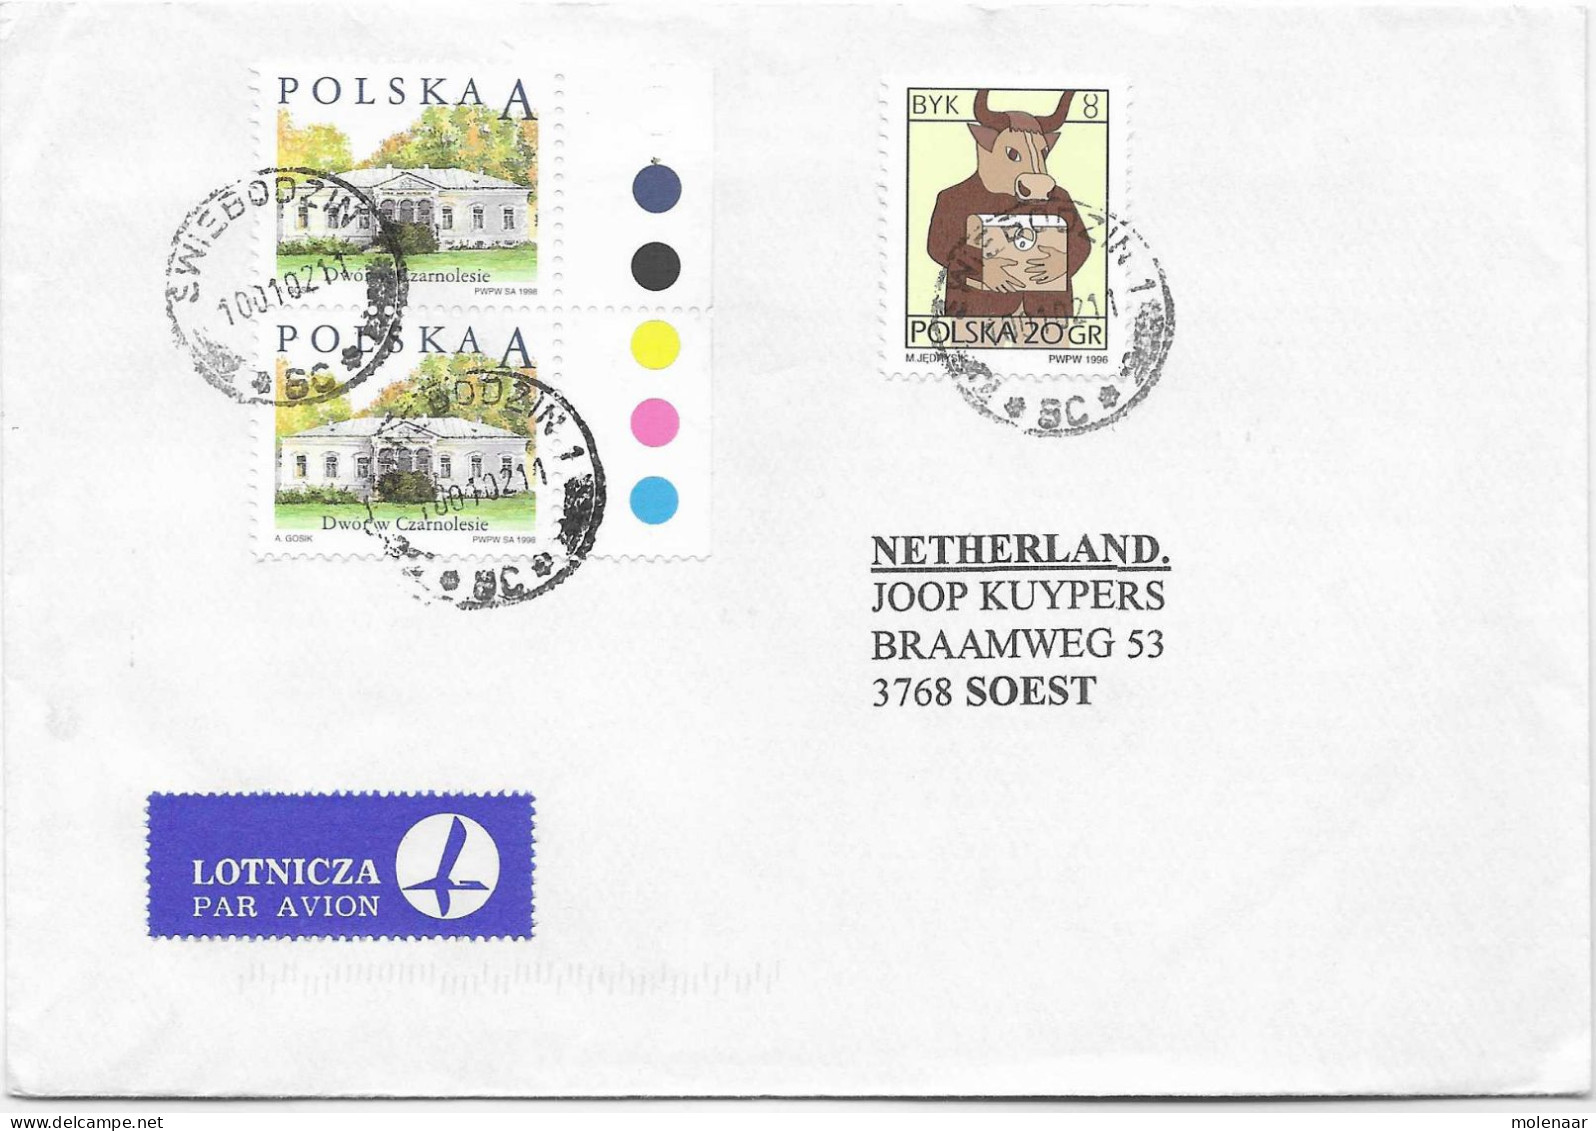 Postzegels > Europa > Polen > 1944-.... Republiek > 2001-10 > Brief Uit 2002 Met 3 Postzegels (17128) - Storia Postale